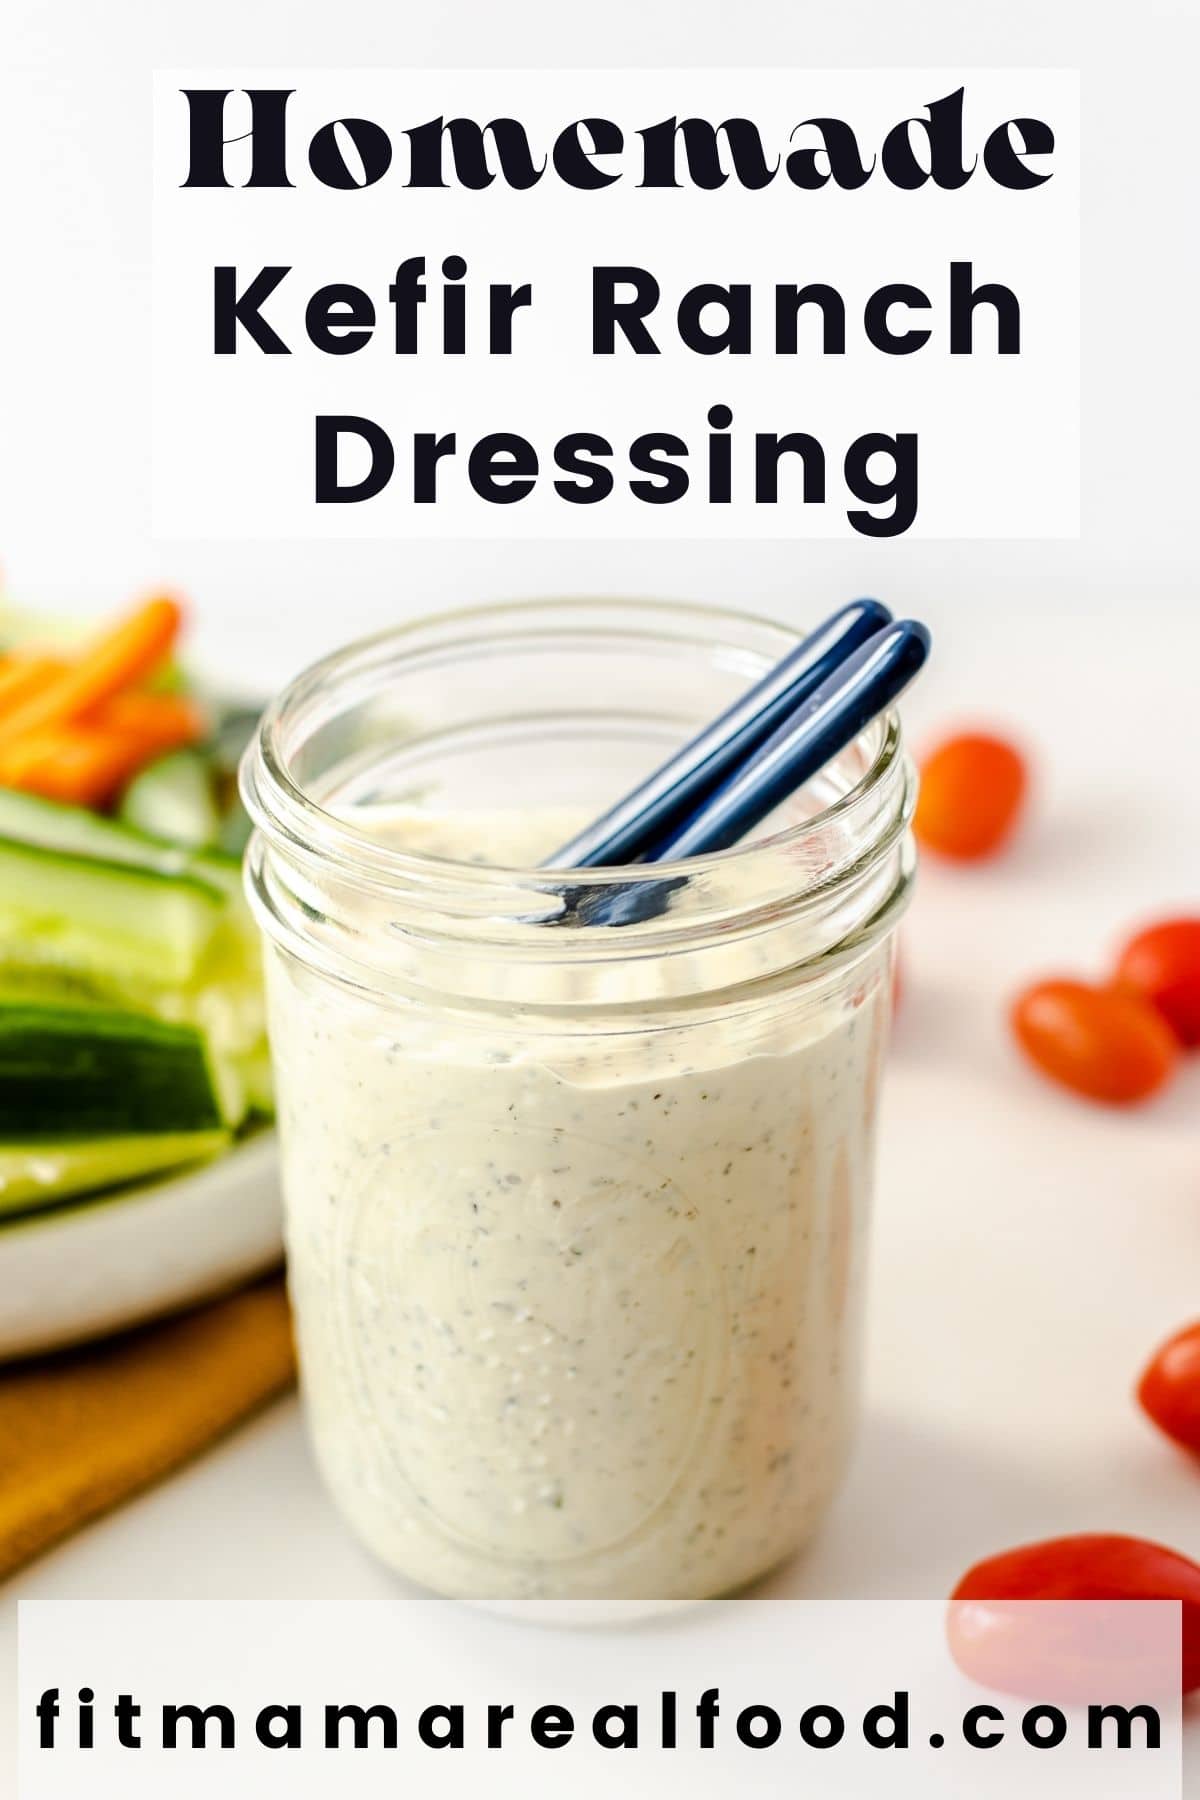 Homemade Kefir Ranch Dressing